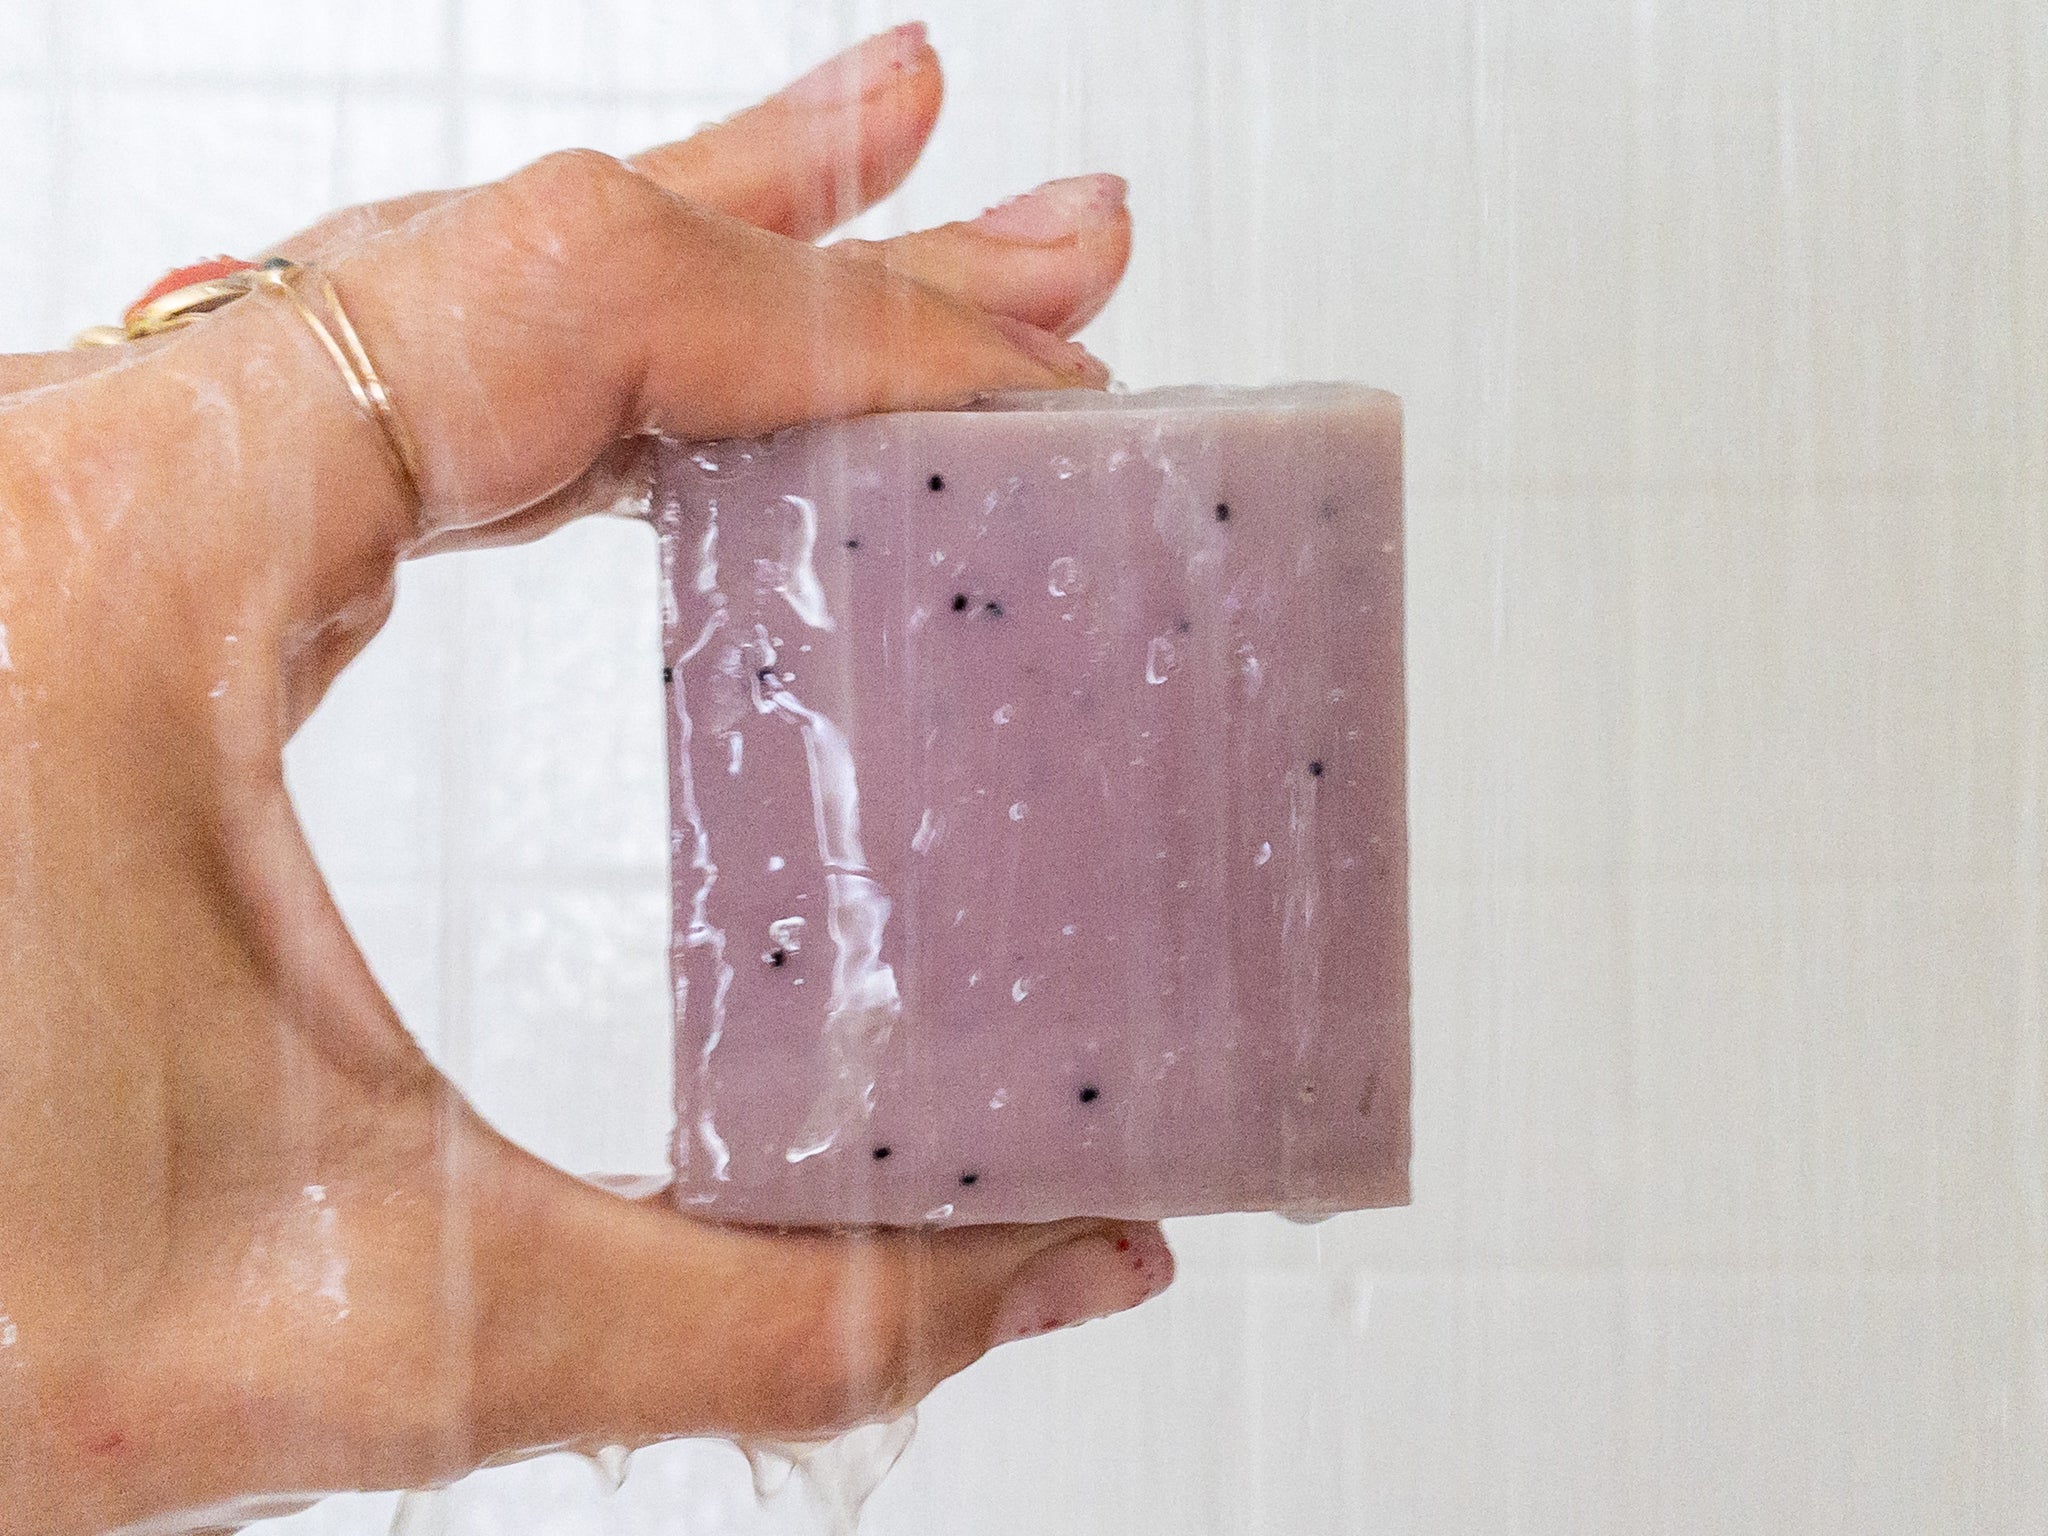 Shampoo solido e sapone corpo solido: come usarli al meglio?